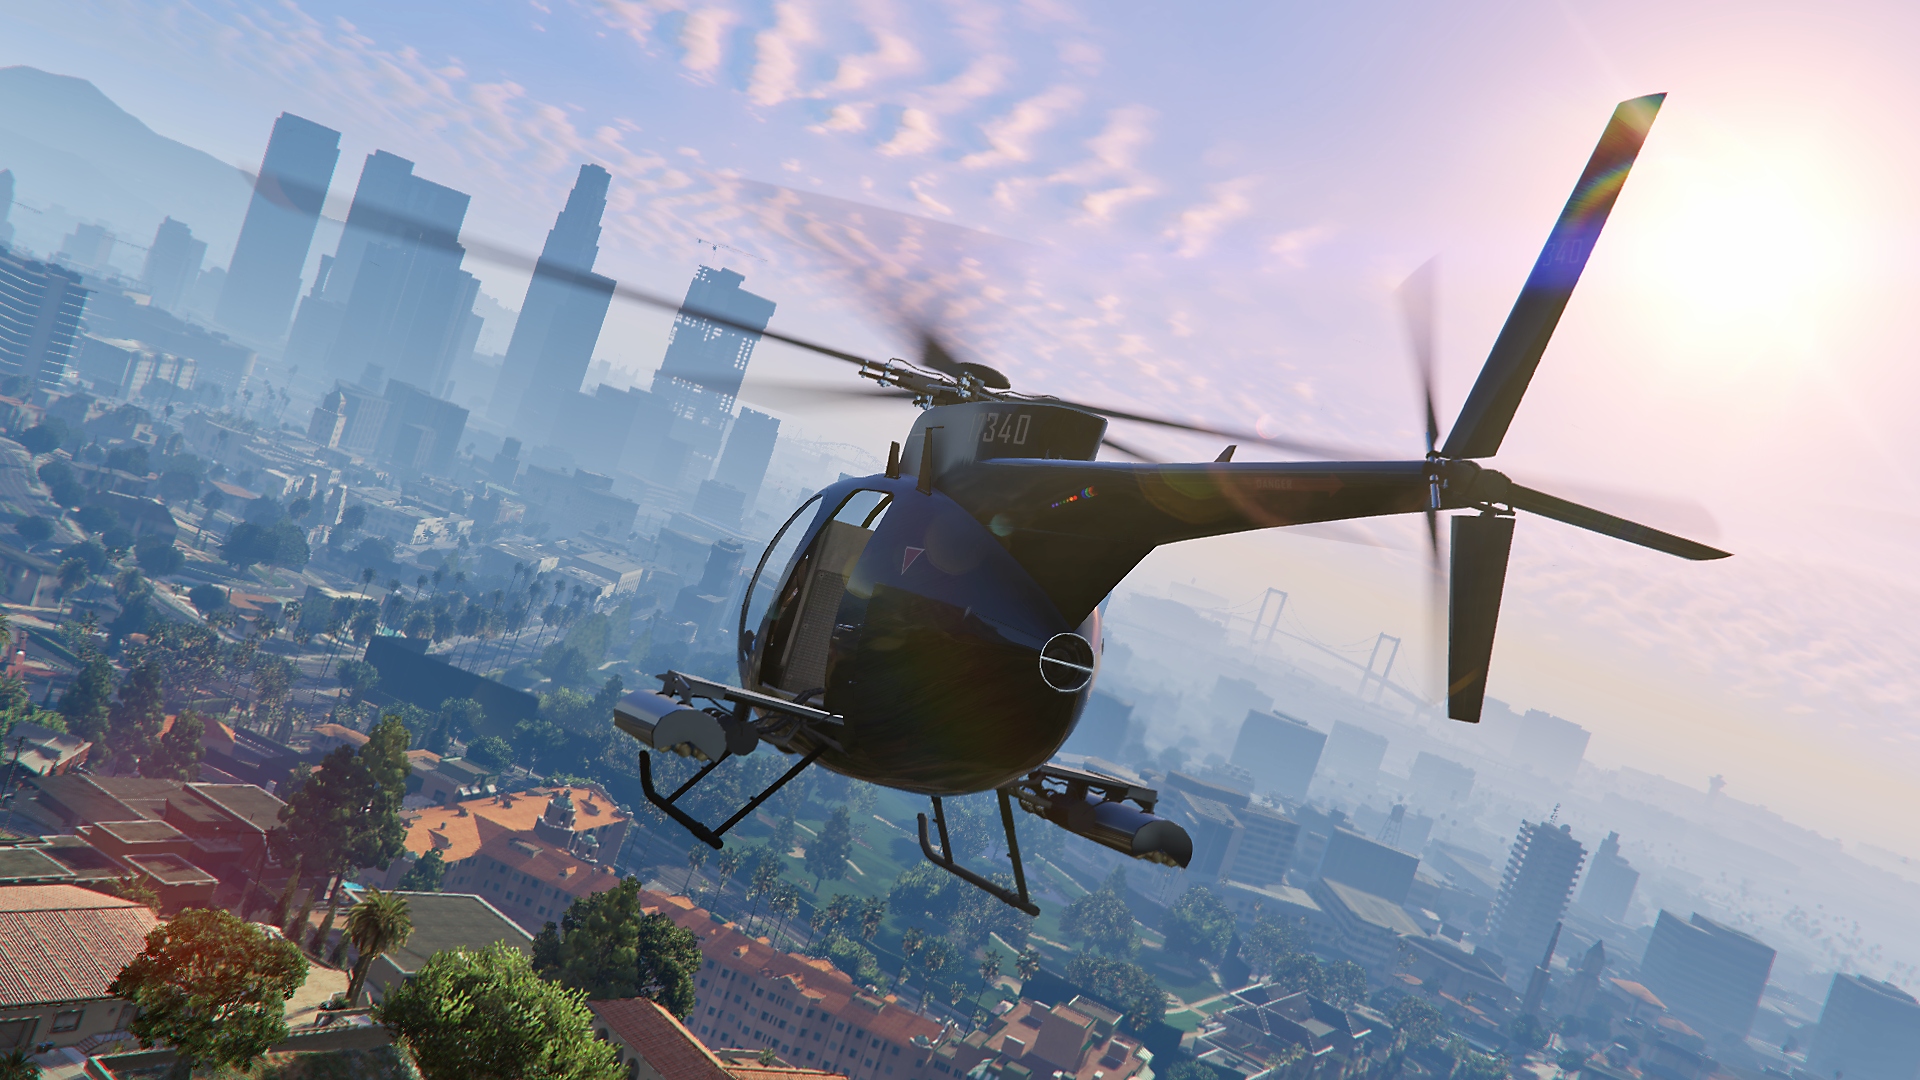 Grand Theft Auto Online - Captura de ecrã que mostra um helicóptero a voar, com a silhueta da cidade ao fundo